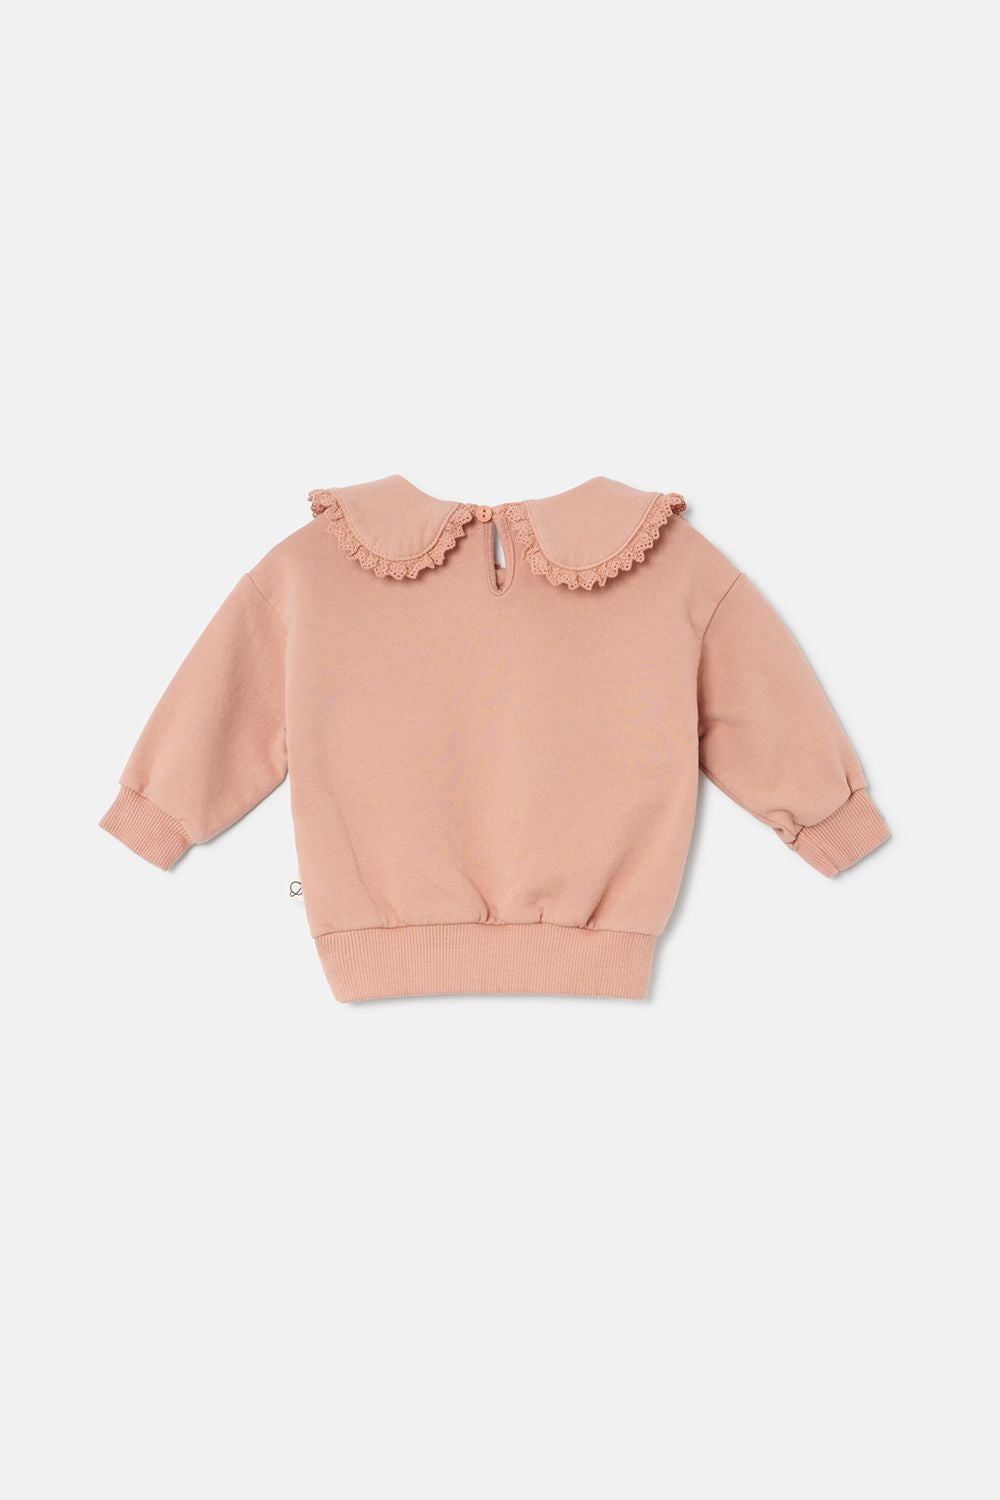 My Little Cozmo - adair234 - ruffle sweatshirt - pink